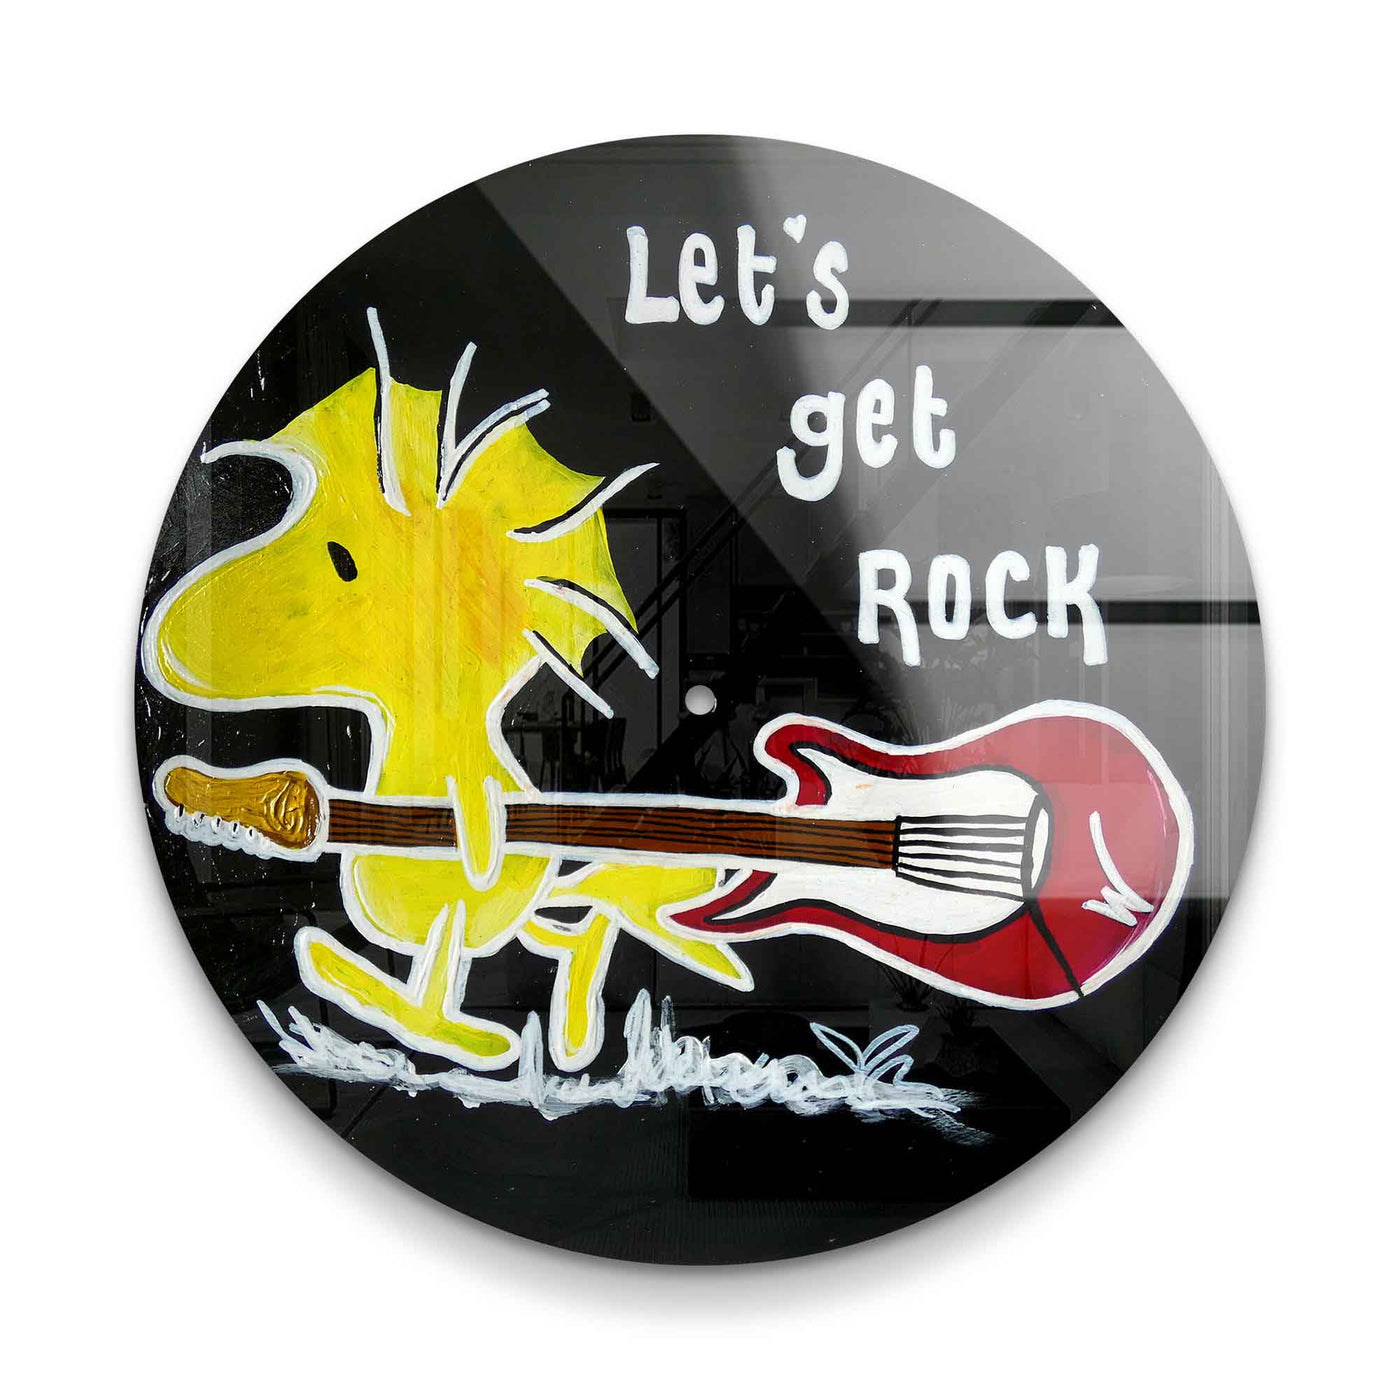 Let's get rock